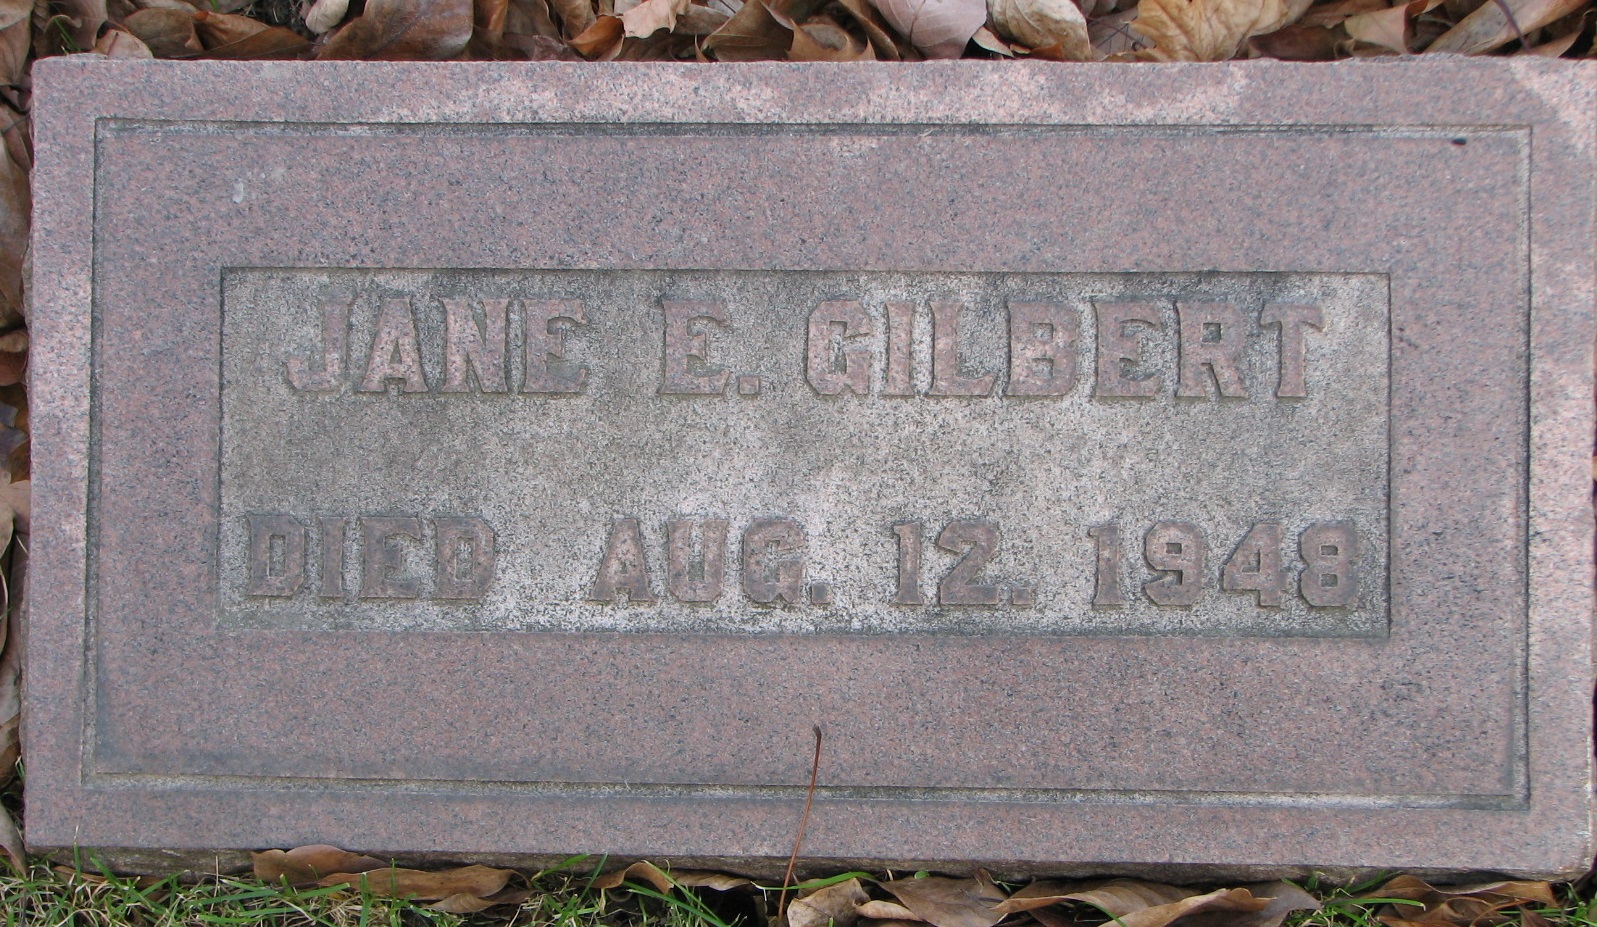 Jane E. Gilbert 1948